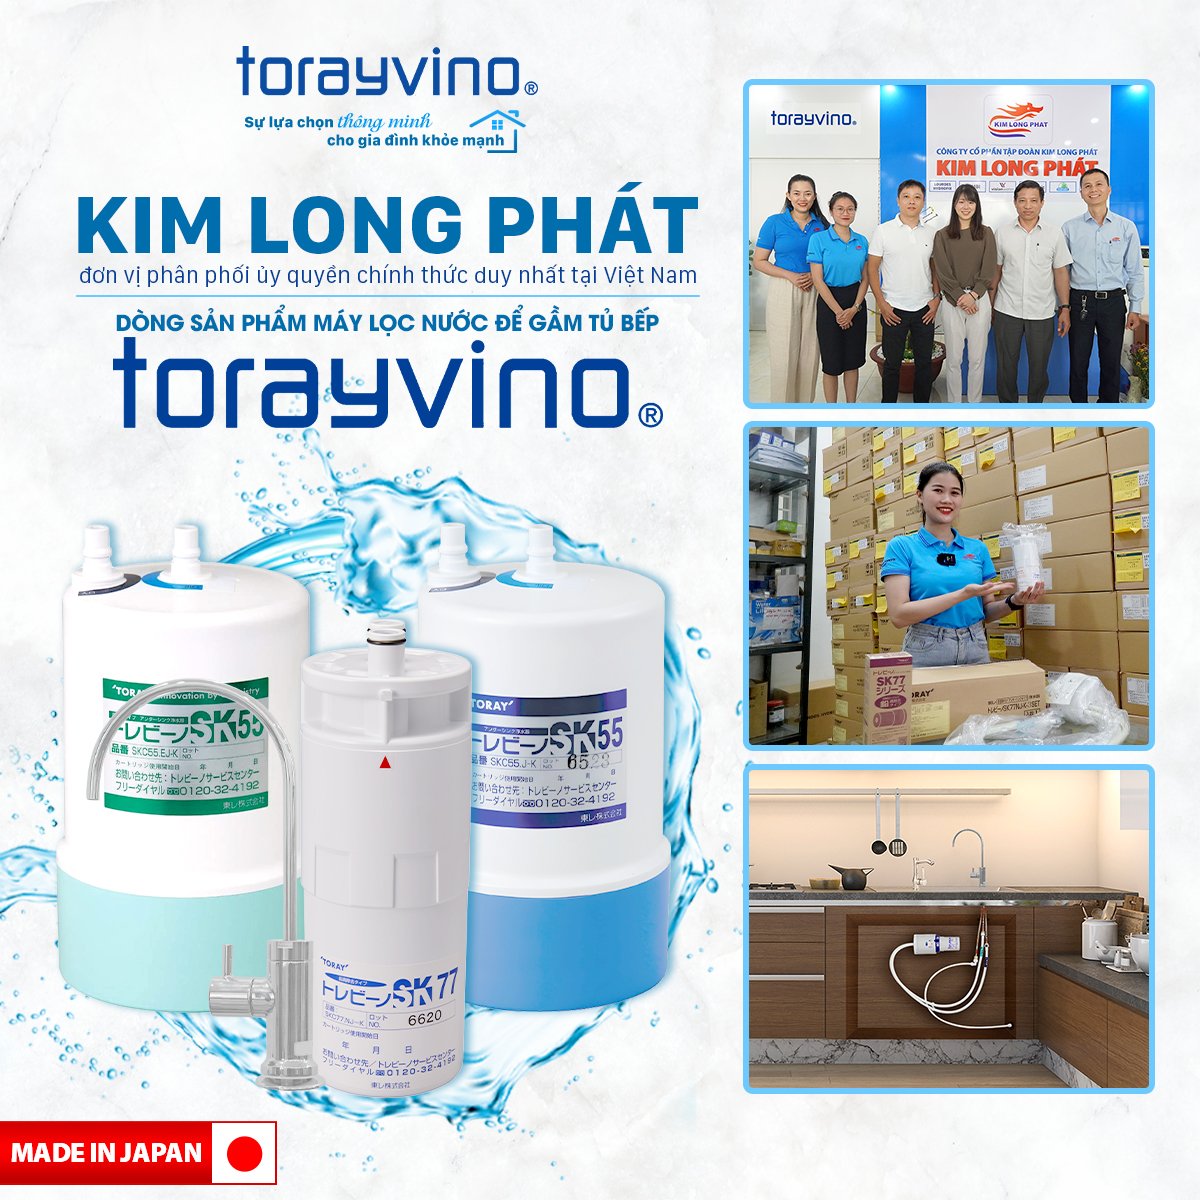 Kim Long Phát là đơn vị phân phối ủy quyền chính thức duy nhất tại Việt Nam dòng sản phẩm máy lọc nước để gầm tủ bếp Torayvino, Nhật Bản